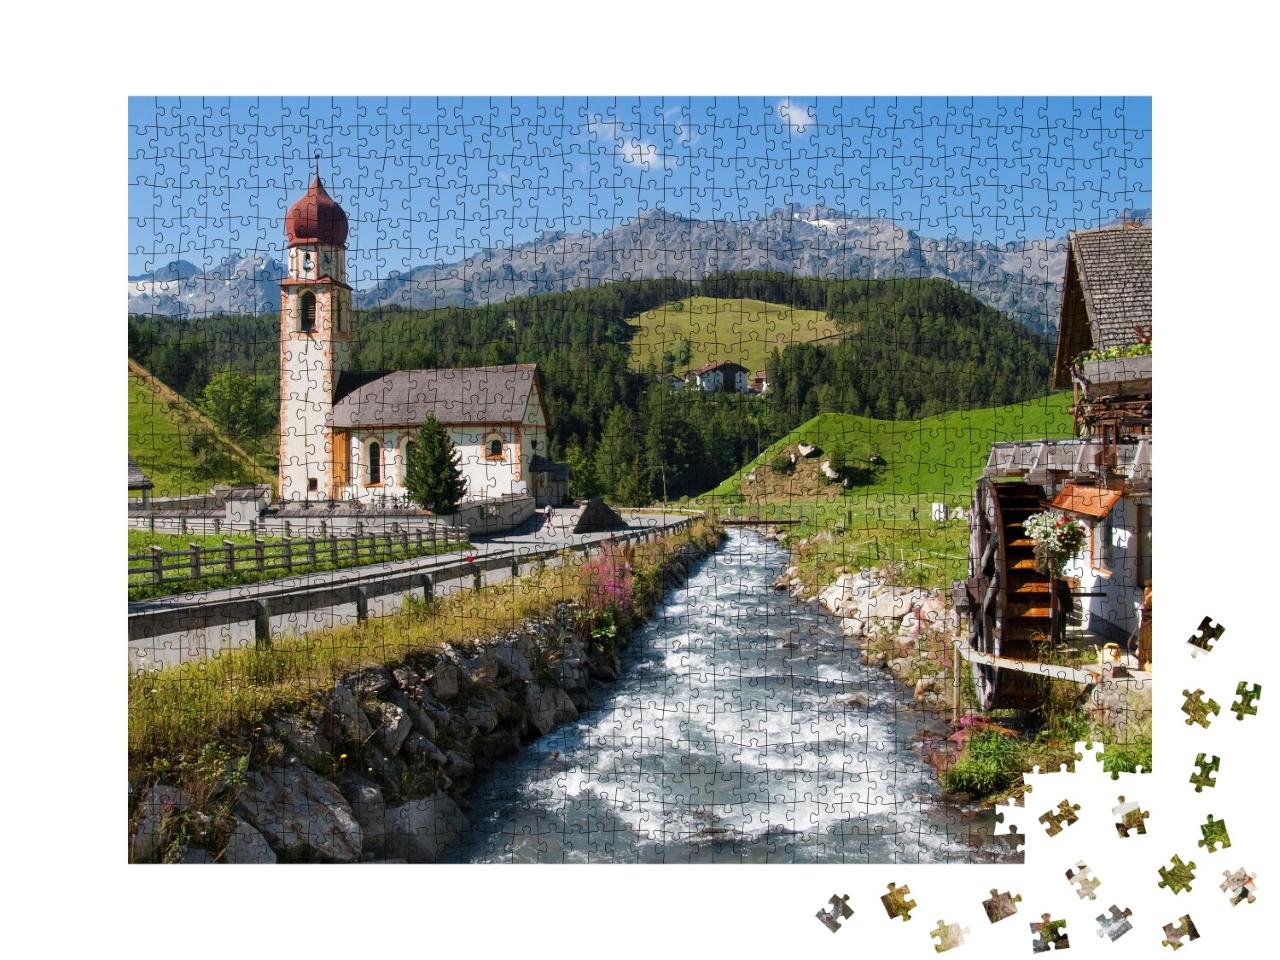 Puzzle de 1000 pièces « Village alpin de Niederthai dans l'Ötztal »